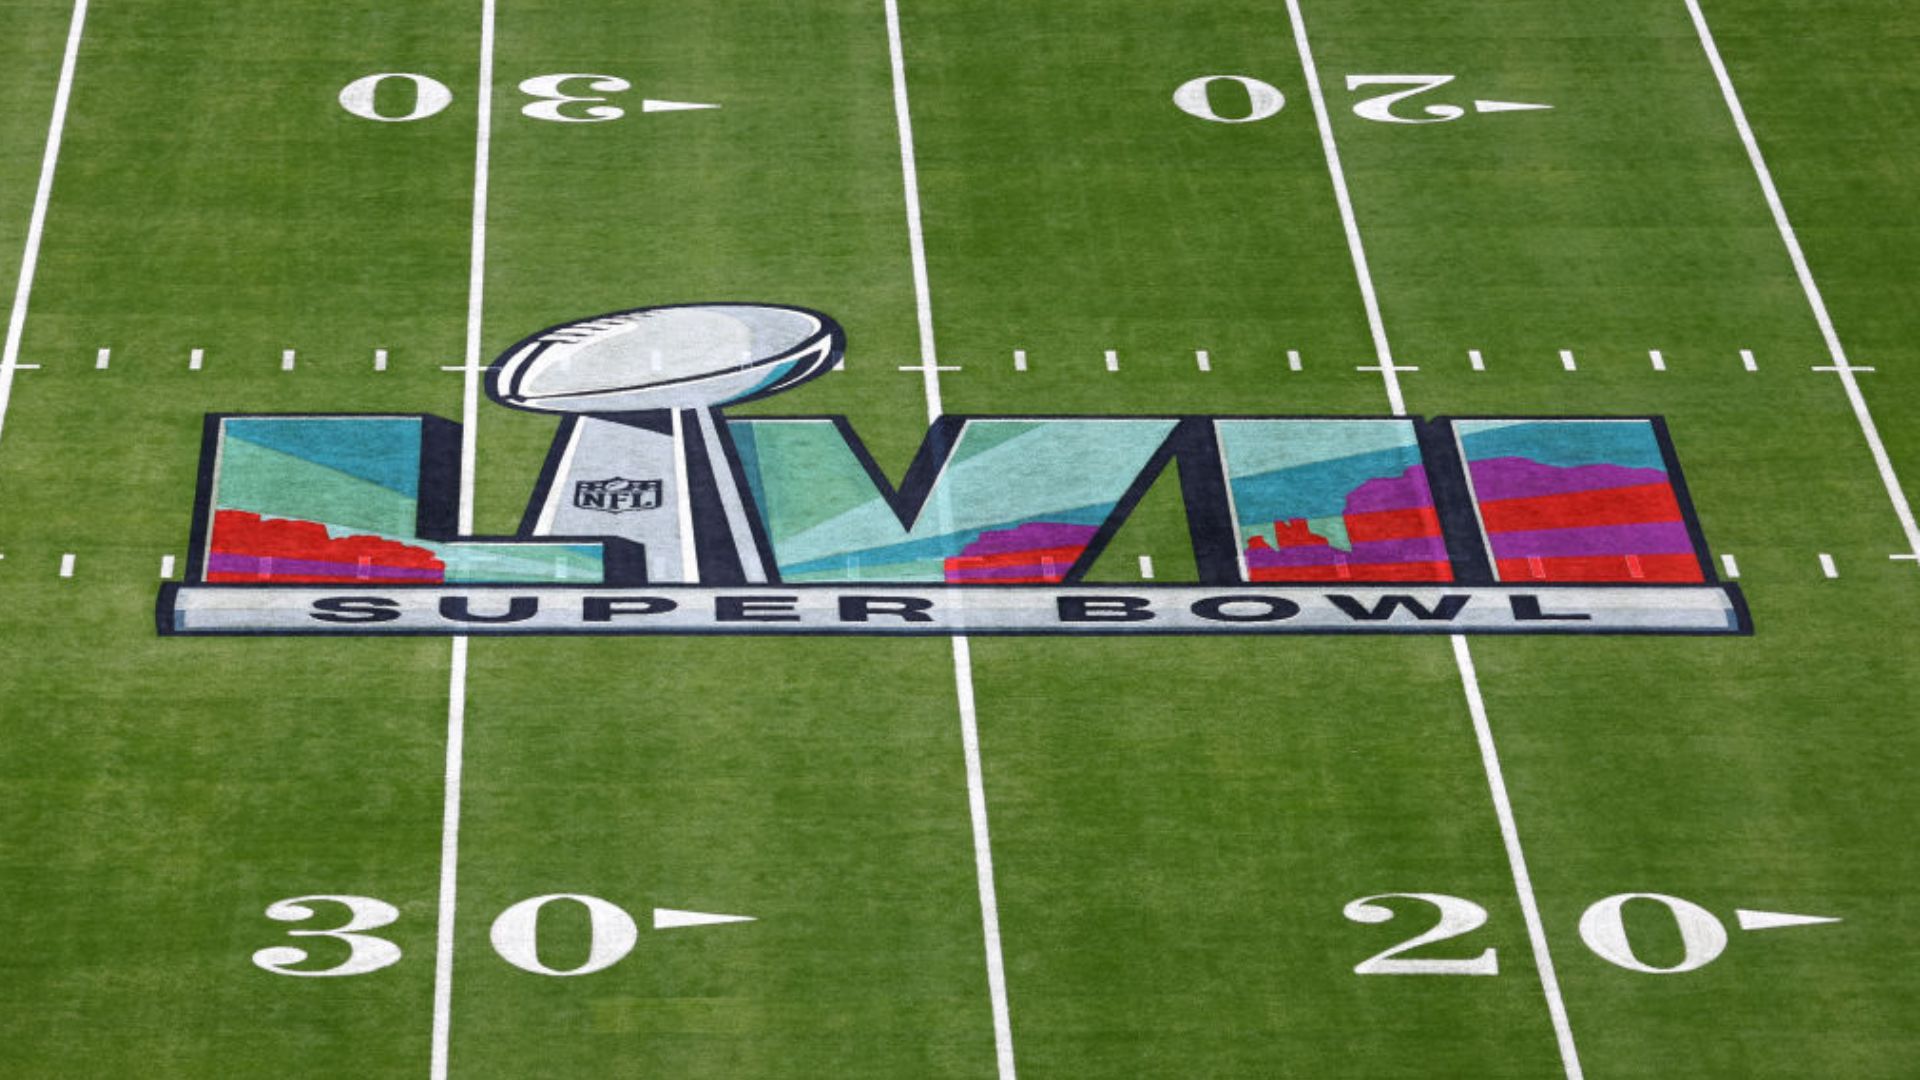 Saga ao Super Bowl, Wk 12: Eagles serão verdadeiro termômetro dos